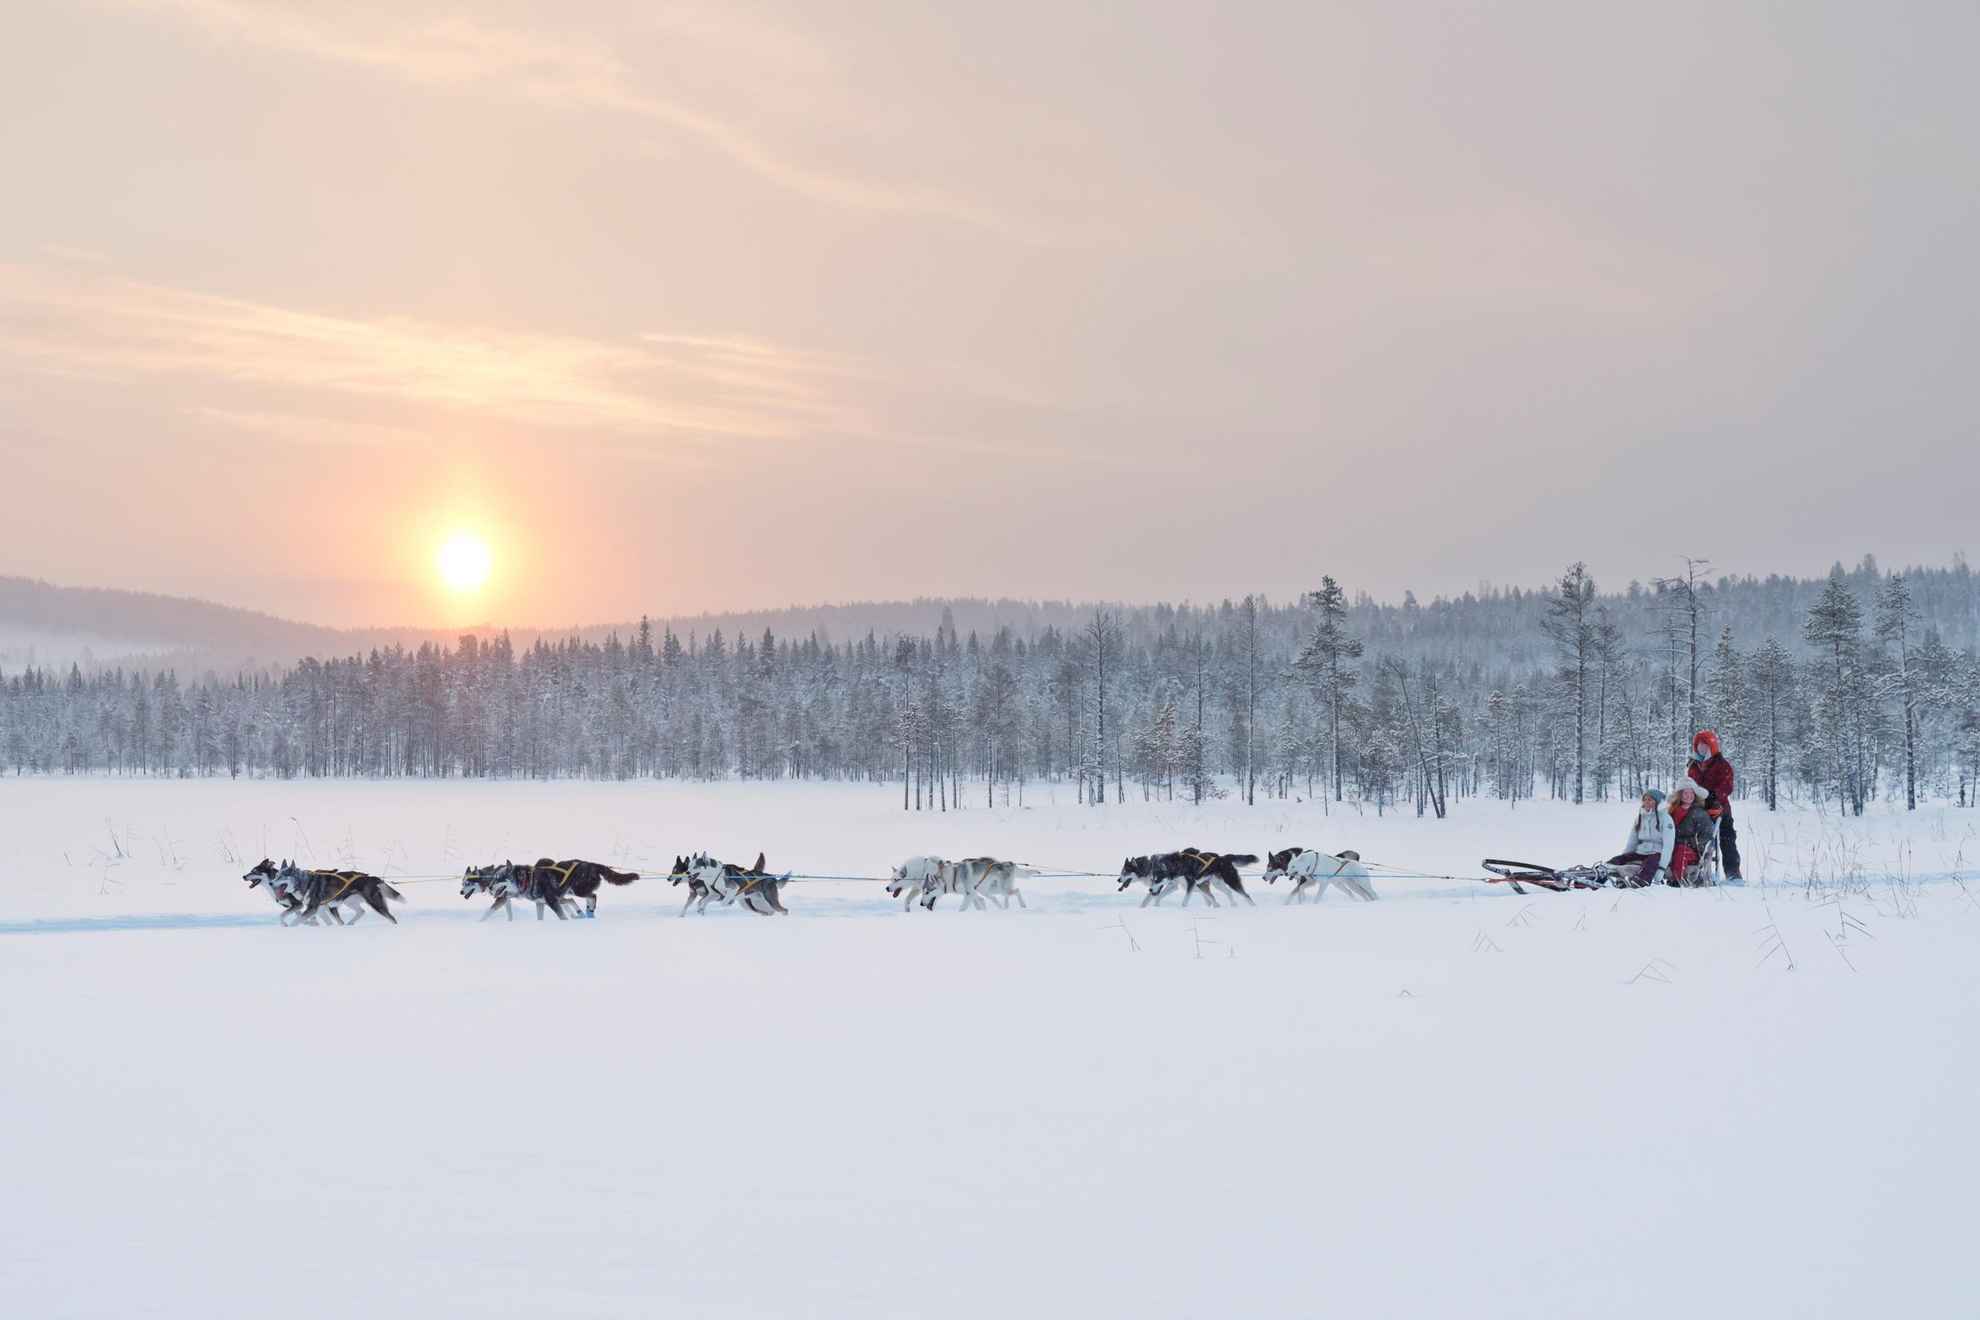 Eine Hundeschlittenfahrt in Jokkmokk, Schwedisch Lappland. 10 Huskies ziehen einen Schlitten mit Menschen über die schwedische Winterlandschaft